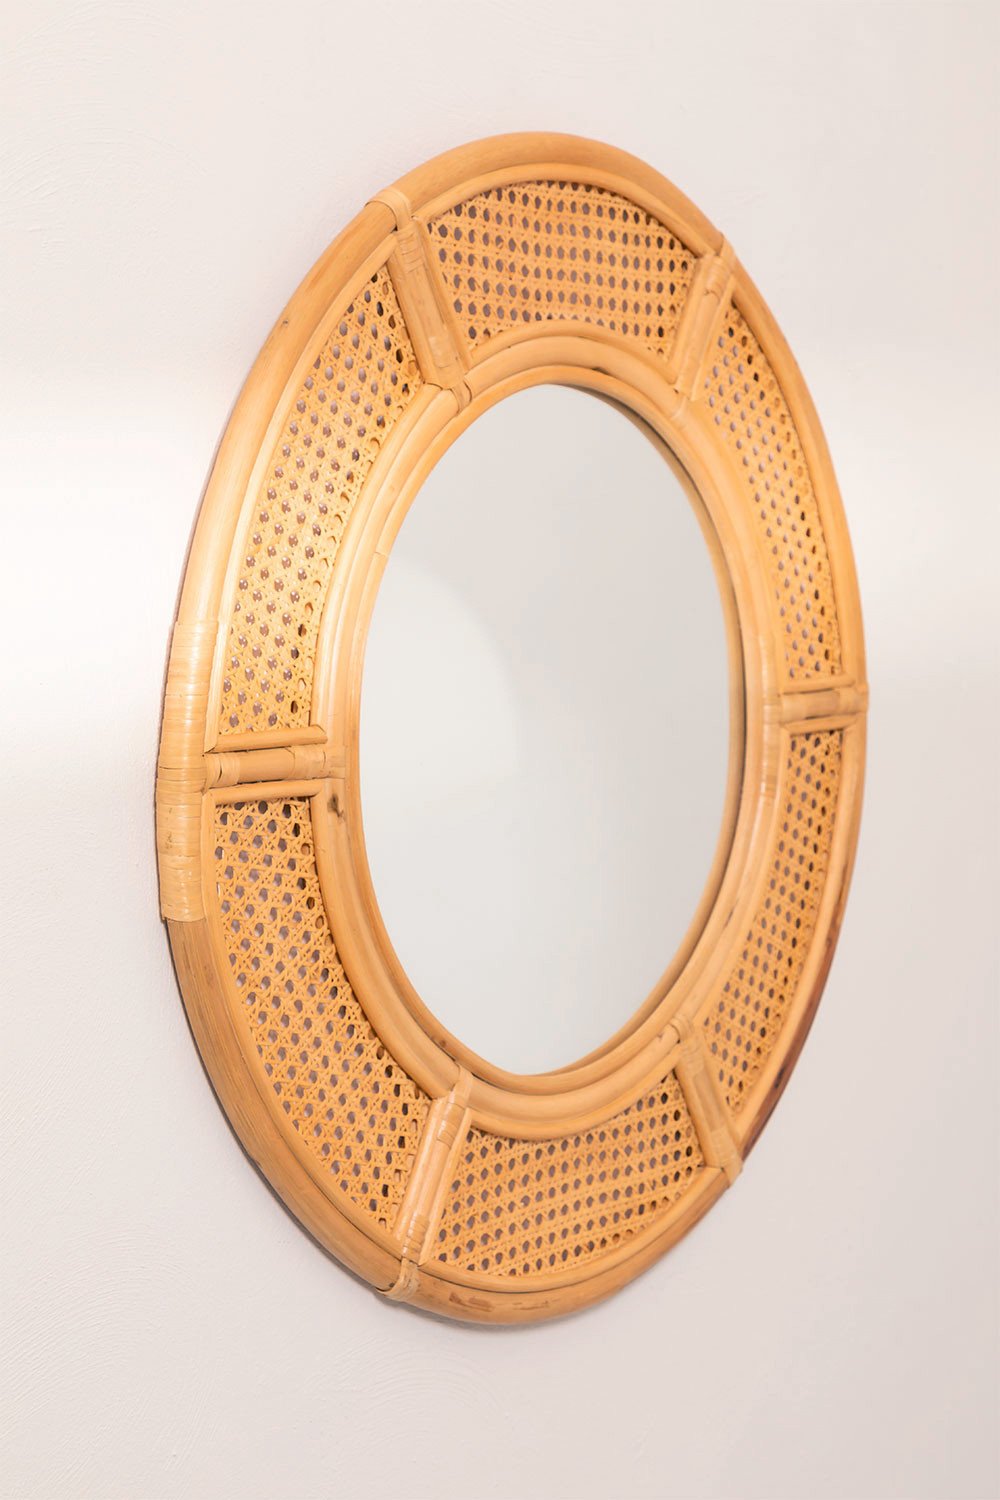 Specchio da parete rotondo in rattan (Ø81 cm) Lopo, immagine della galleria 1